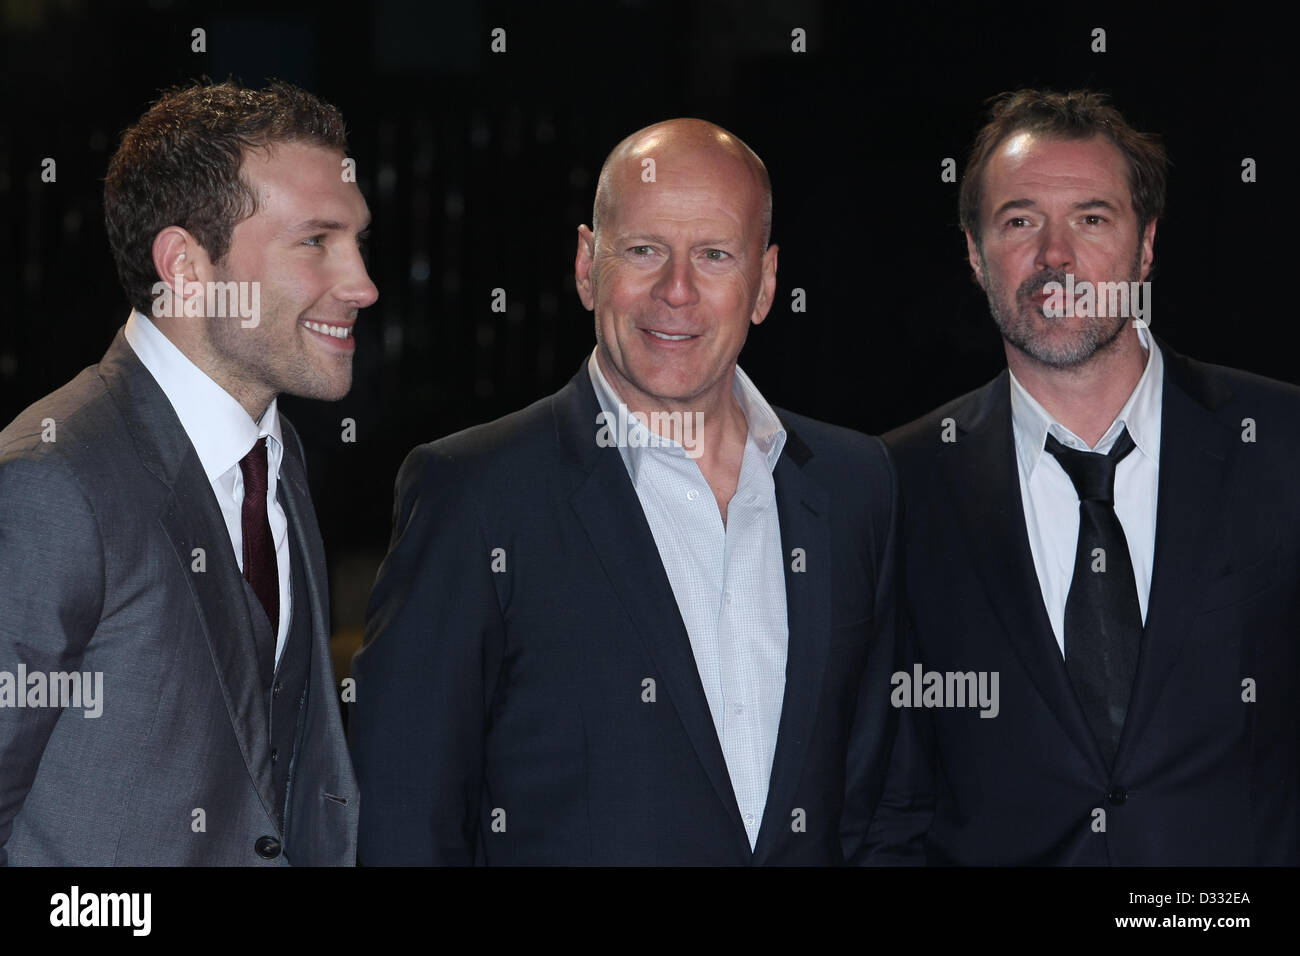 JAI COURTNEY & Bruce Willis & SEBASTIAN KOCH UN BUON GIORNO PER DIE HARD. UK FILM PREMIERE Londra Inghilterra Regno Unito 07 Febbraio 2013 Foto Stock